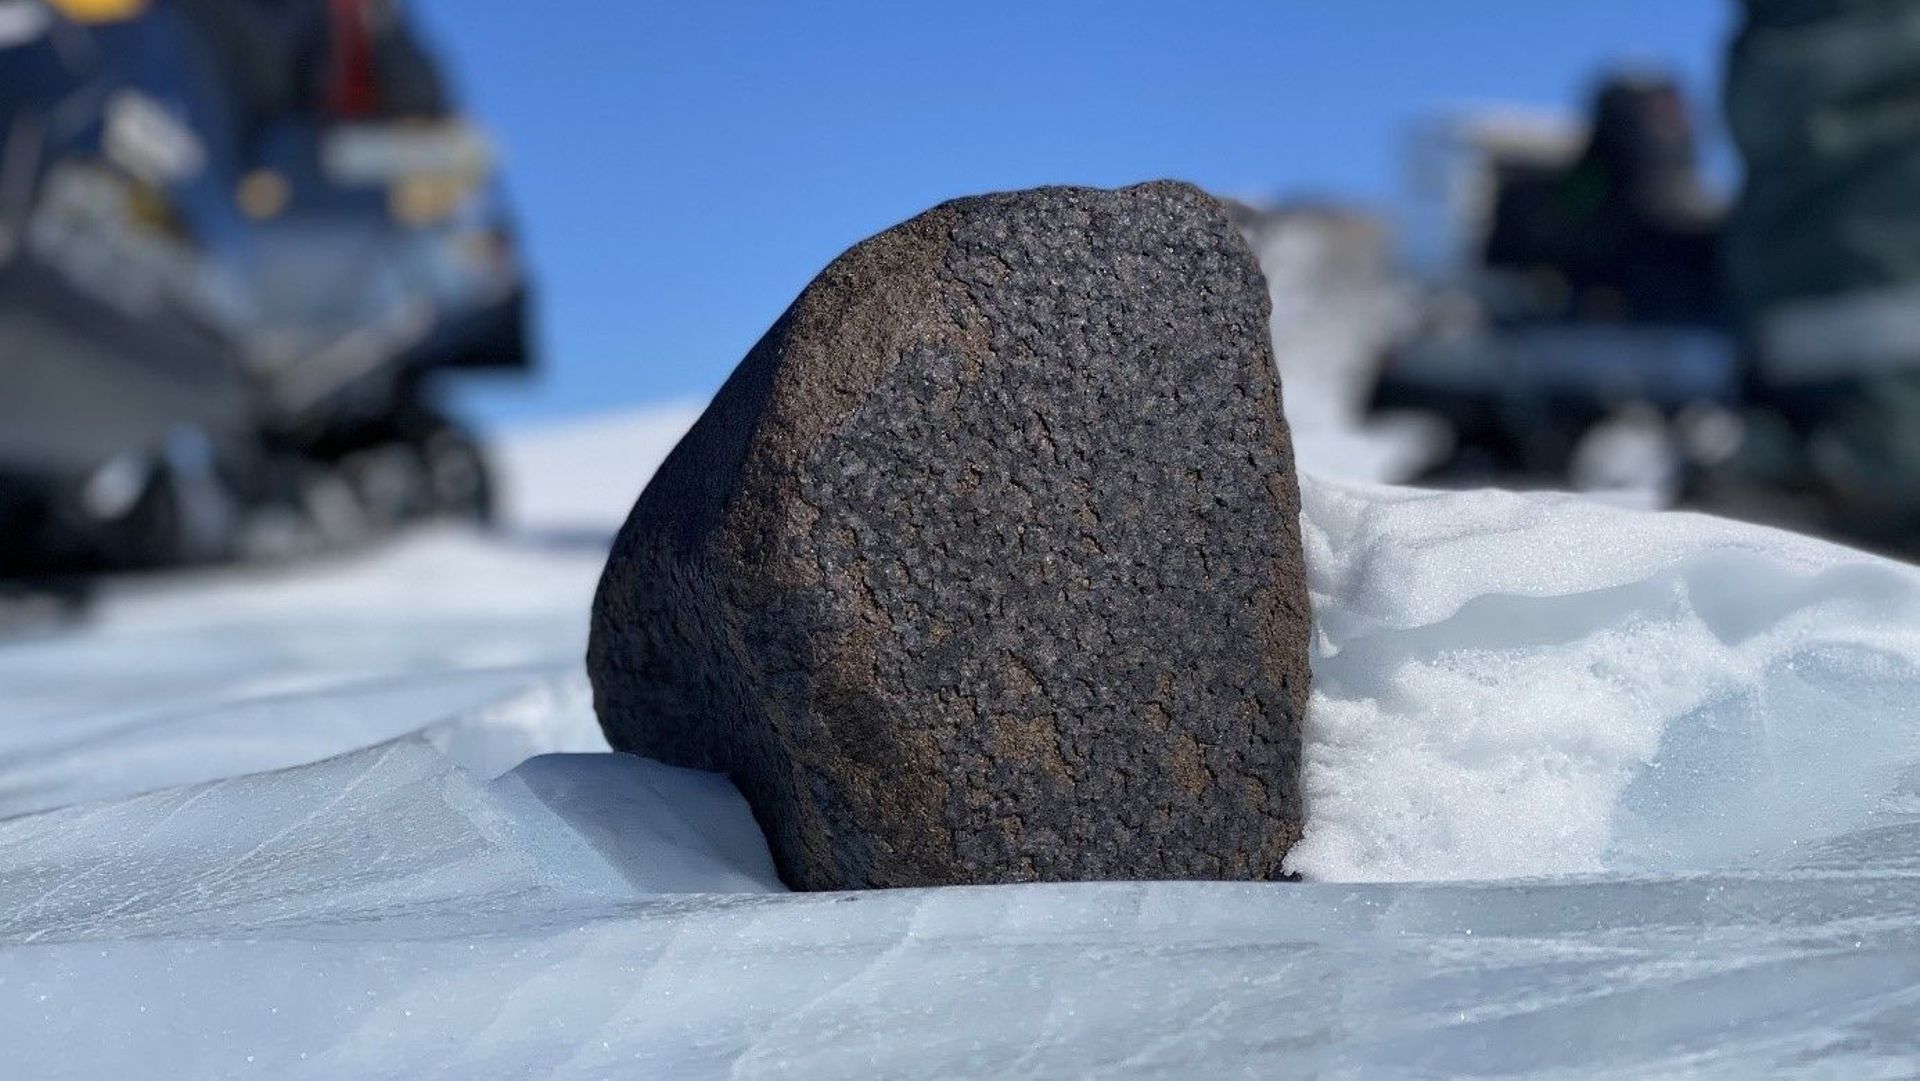 Un team scientifico internazionale guidato da un geologo belga ha scoperto un meteorite di 7,6 kg in Antartide